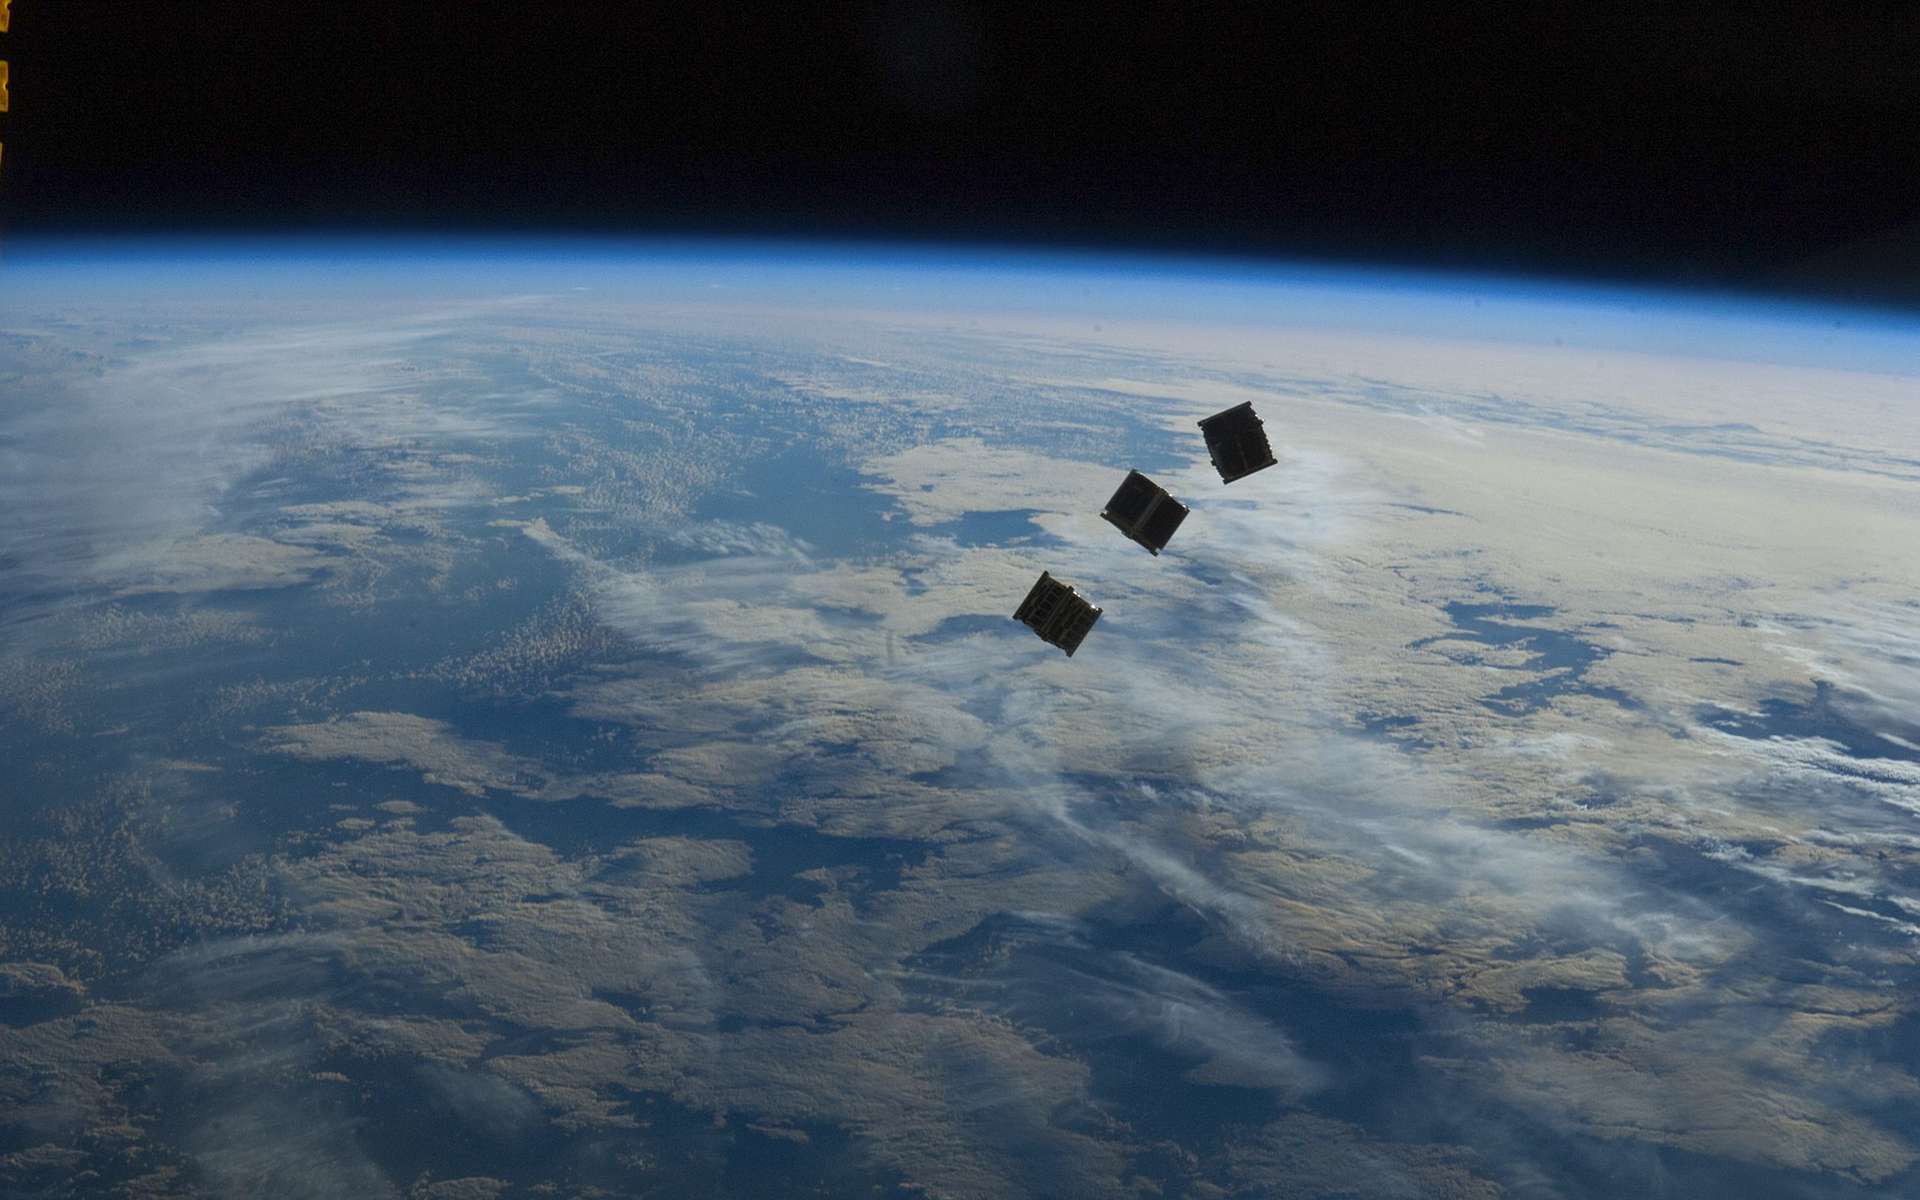 Trois petits CubeSats « lancés » depuis la Station spatiale internationale. Latitude, une start-up française développe un nano-lanceur adapté à la taille de ces très petits satellites qui pourra les lancer depuis la Terre. © Nasa